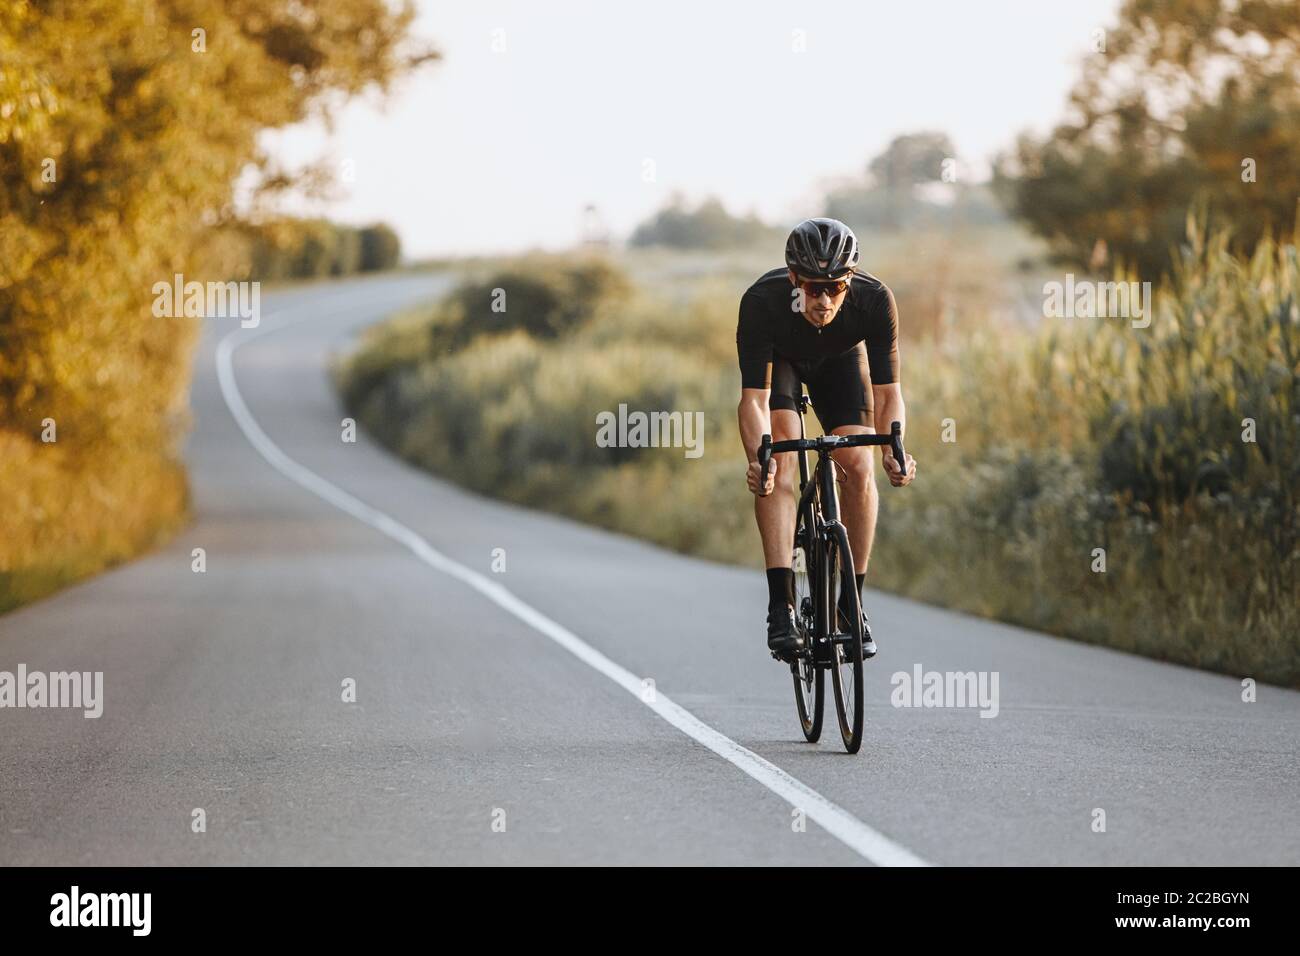 Cycliste professionnel, casque noir, lunettes de protection et casque d'activité, qui fait rouler dynamiquement le vélo sur route pavée avec un arrière-plan flou. Concept de Banque D'Images